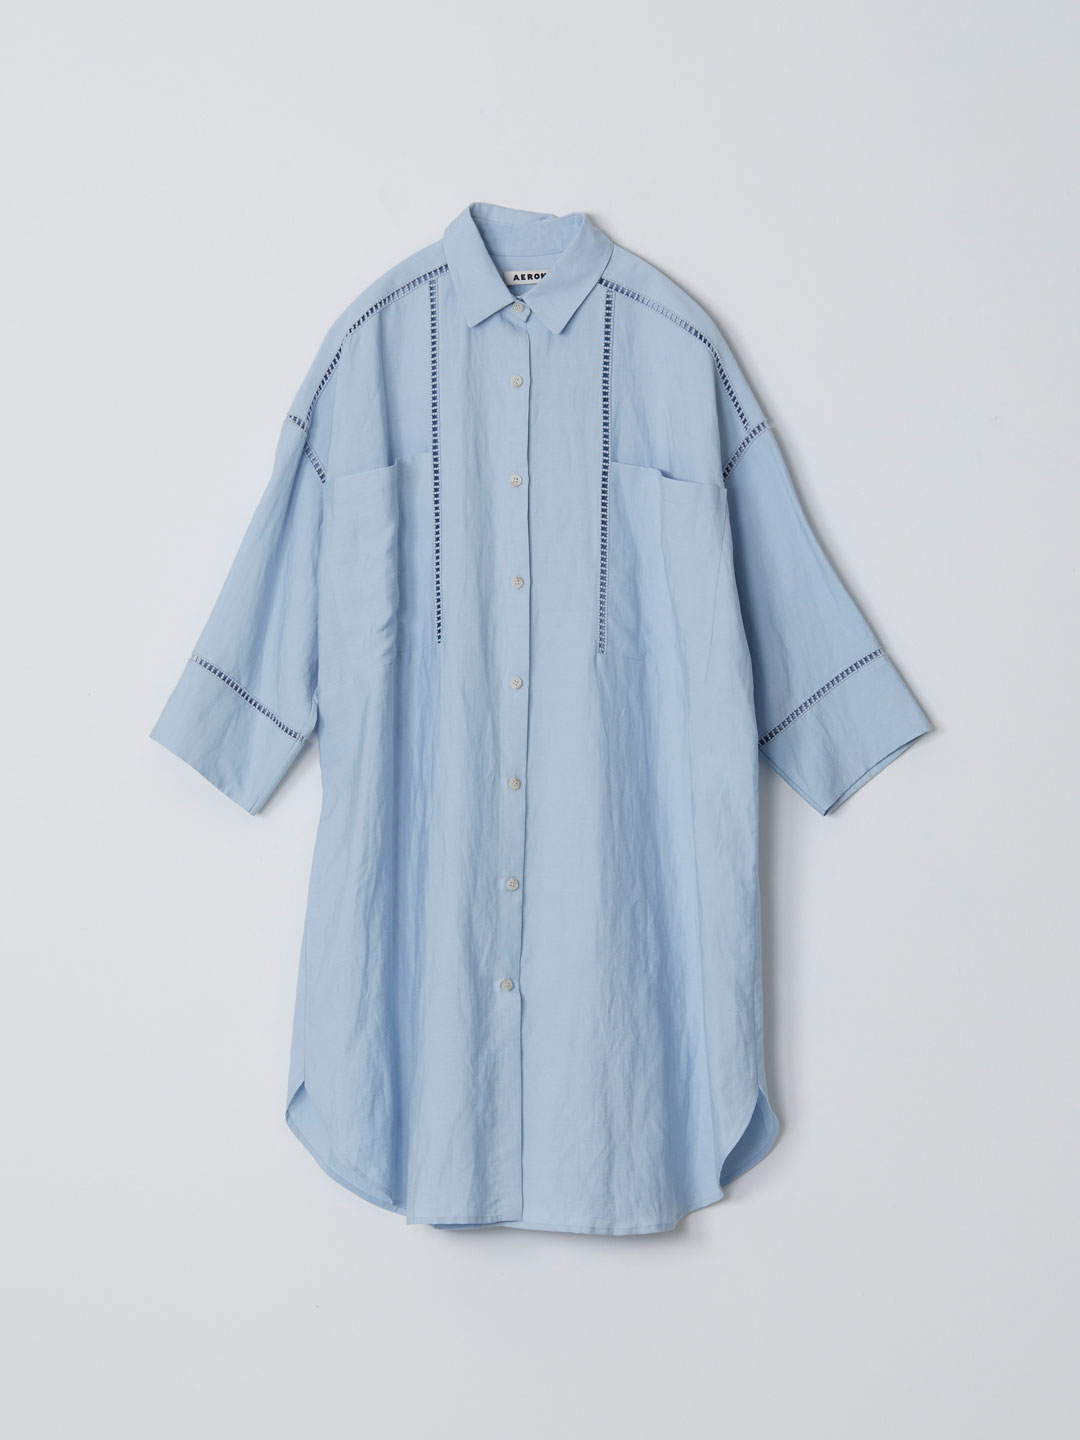 VIENNA / Oversized Shirt Dress - Blue